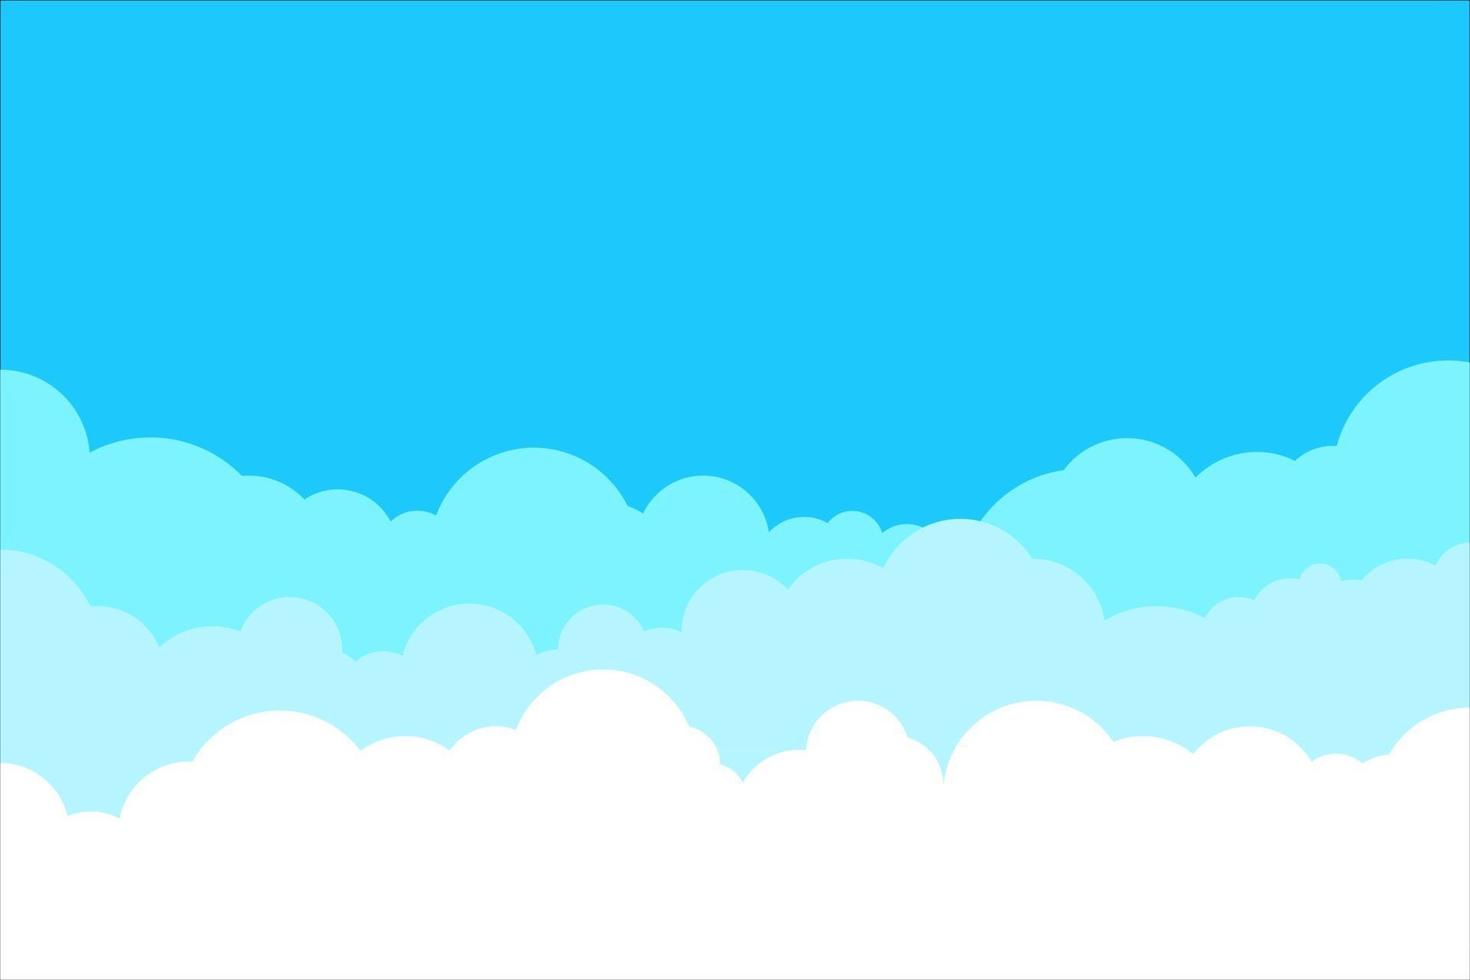 ciel bleu avec fond de nuages blancs. bordure de nuages. conception de bande dessinée simple. illustration vectorielle de style plat. vecteur